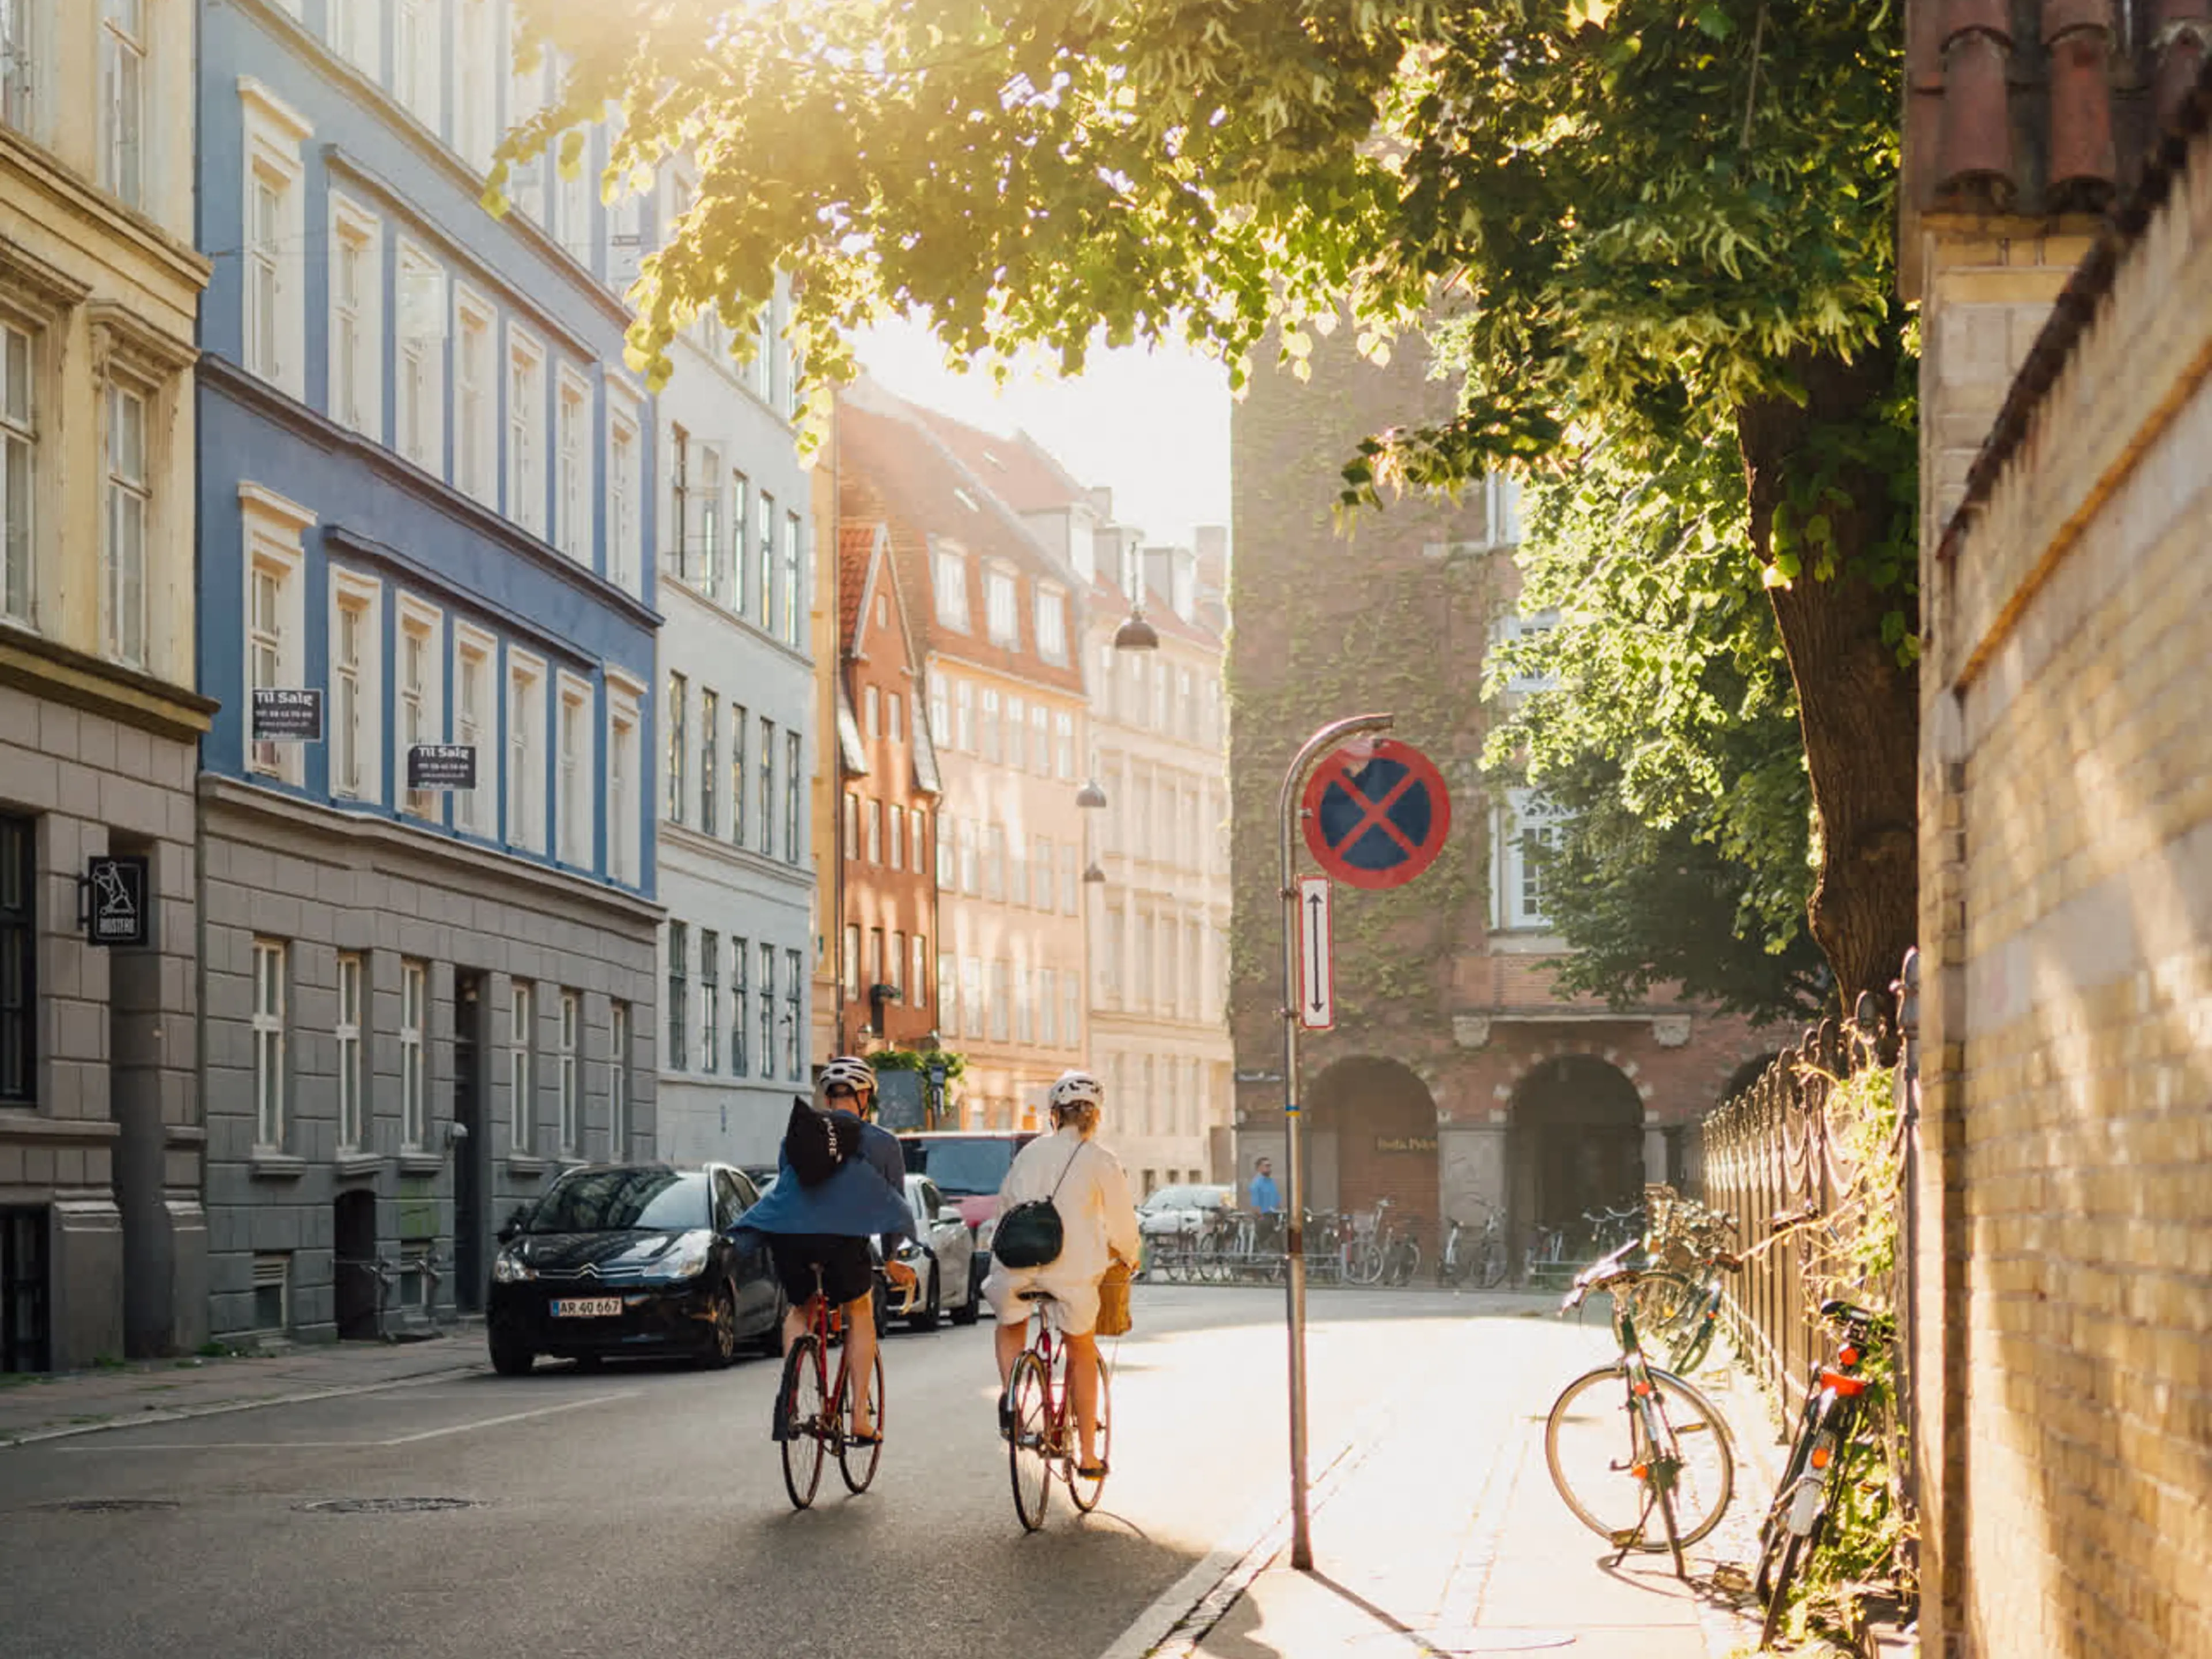 Two people biking in the inner city of Copenhagen in the sun